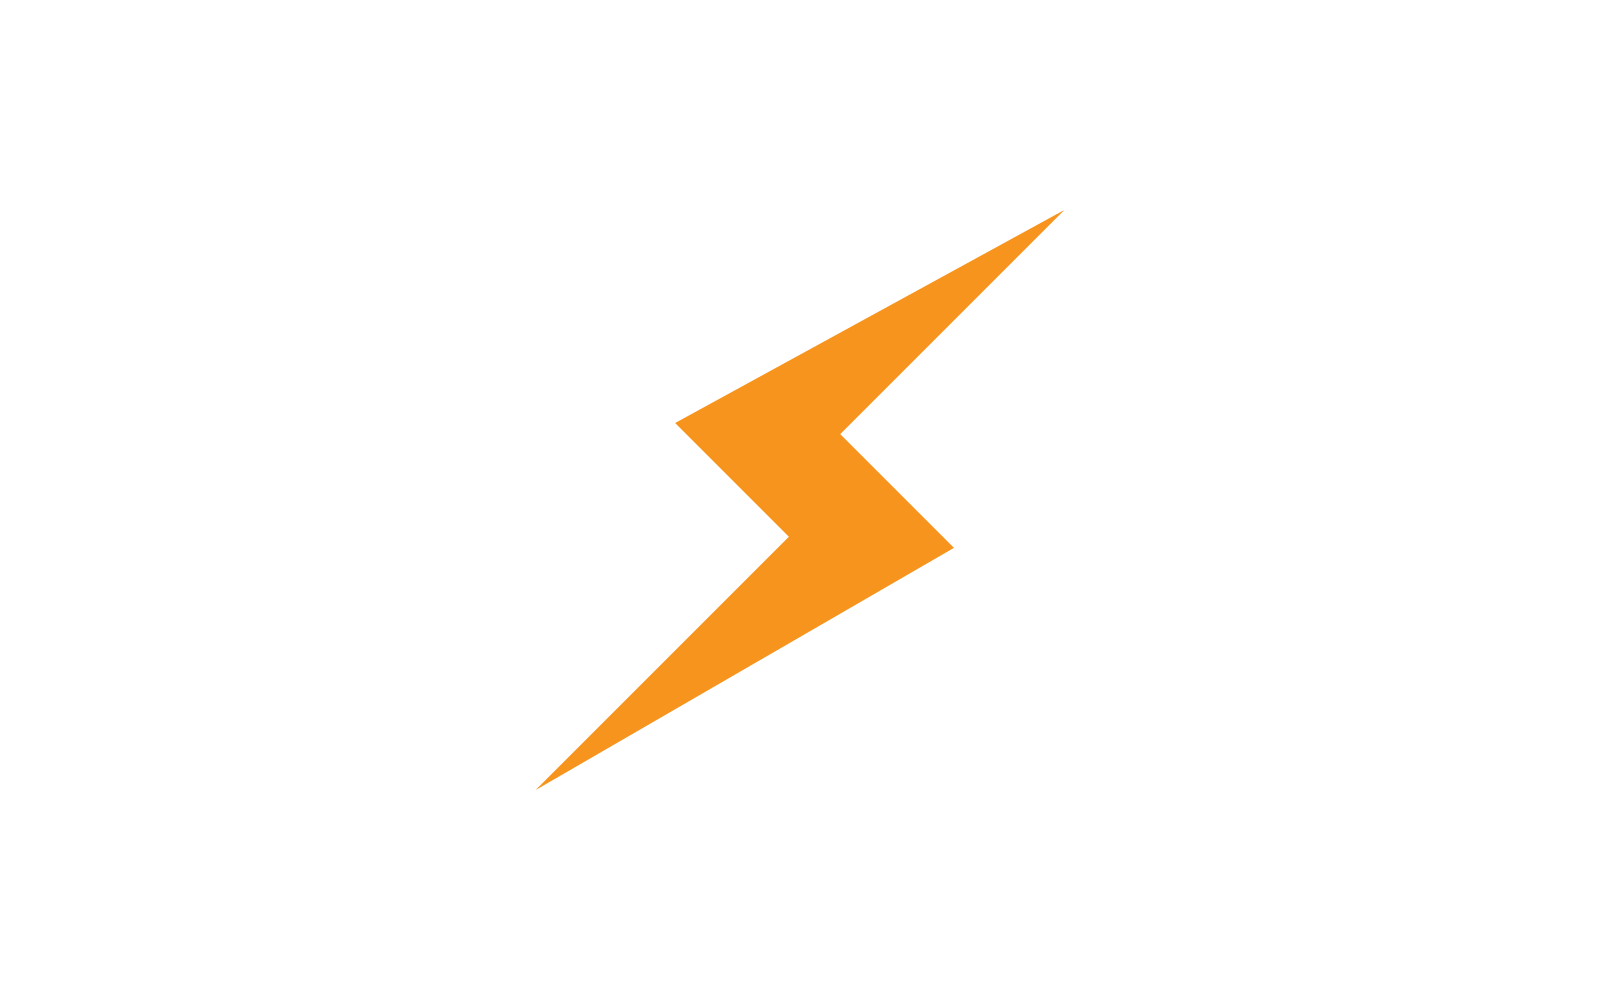 Power lightning power energy icon logo vector design Logo Template